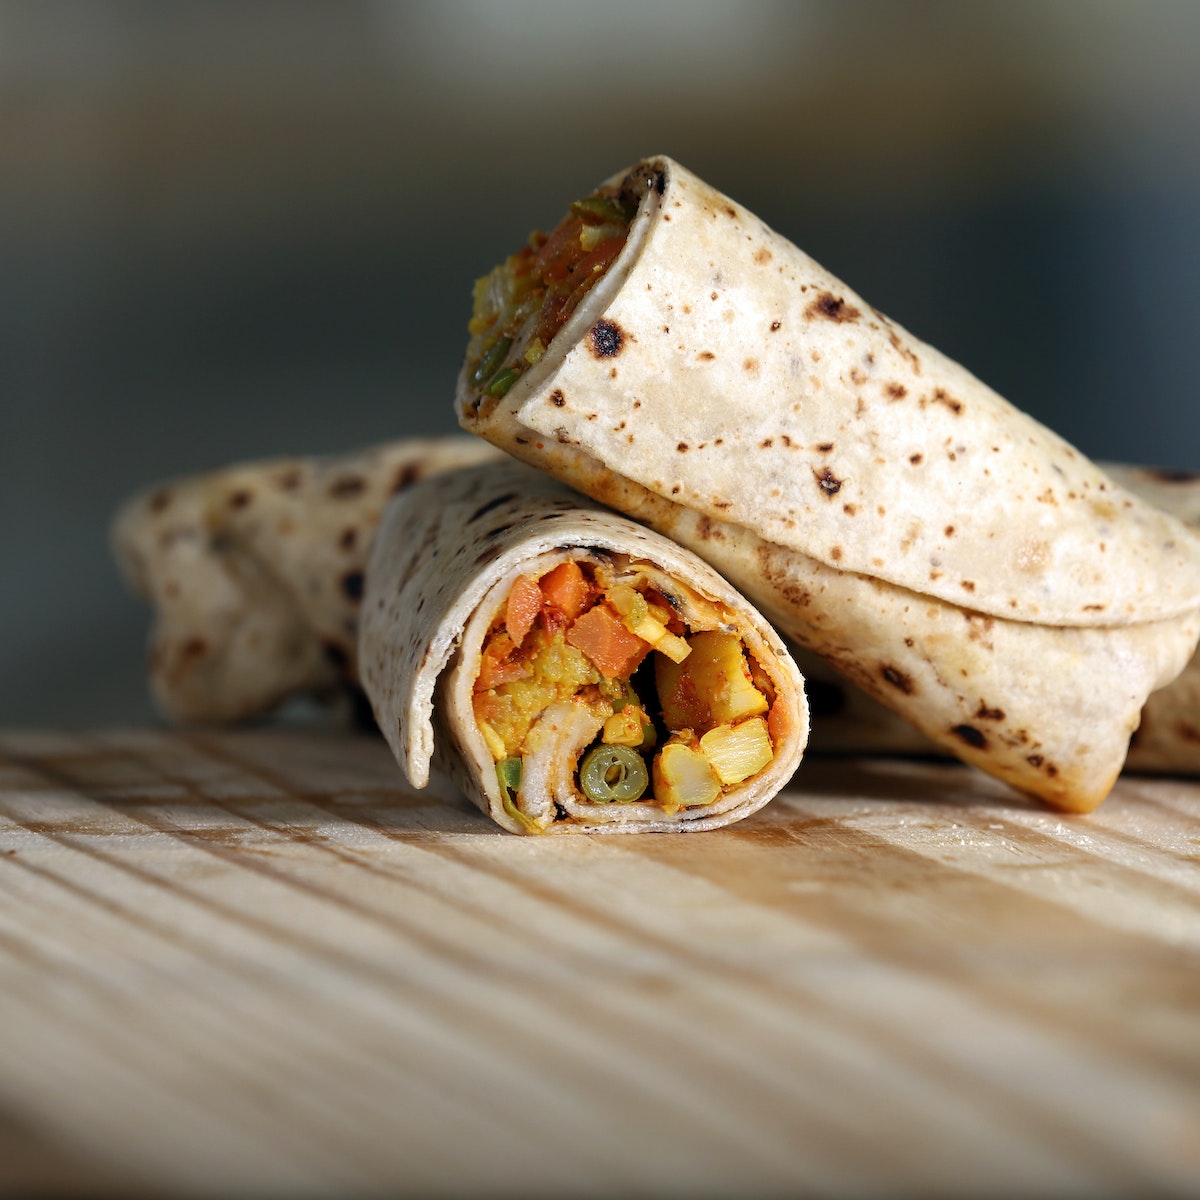 Close-Up Photo Of Burrito